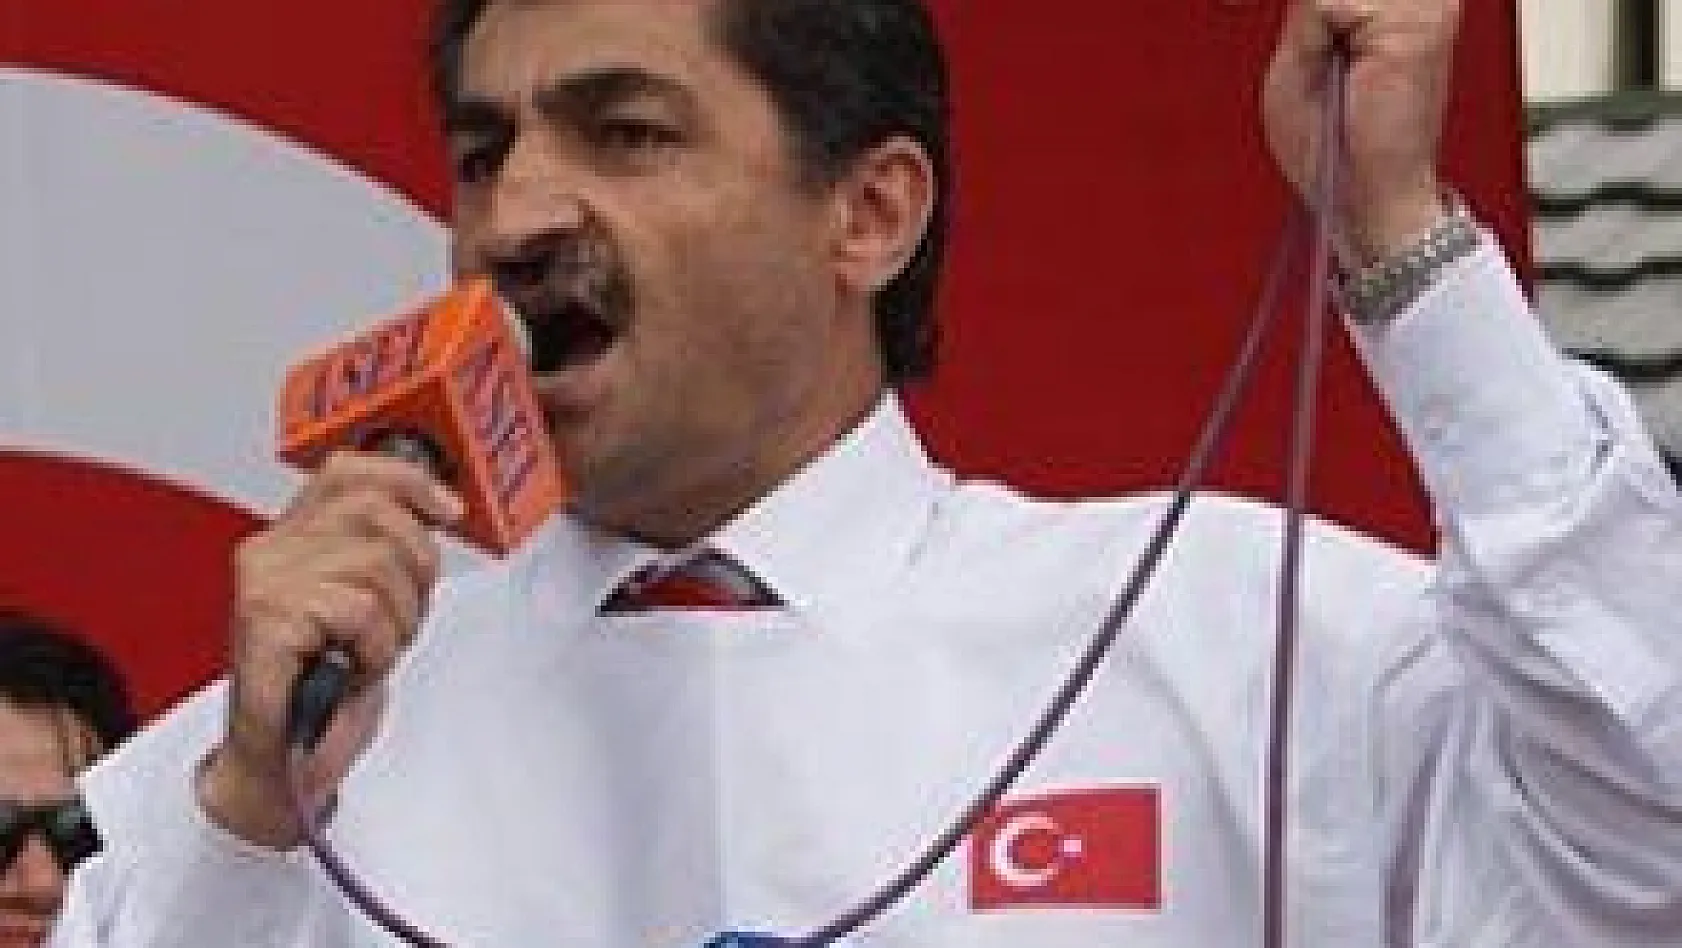 Memurlar'dan, AKP'ye geçinemiyoruz tepkisi: